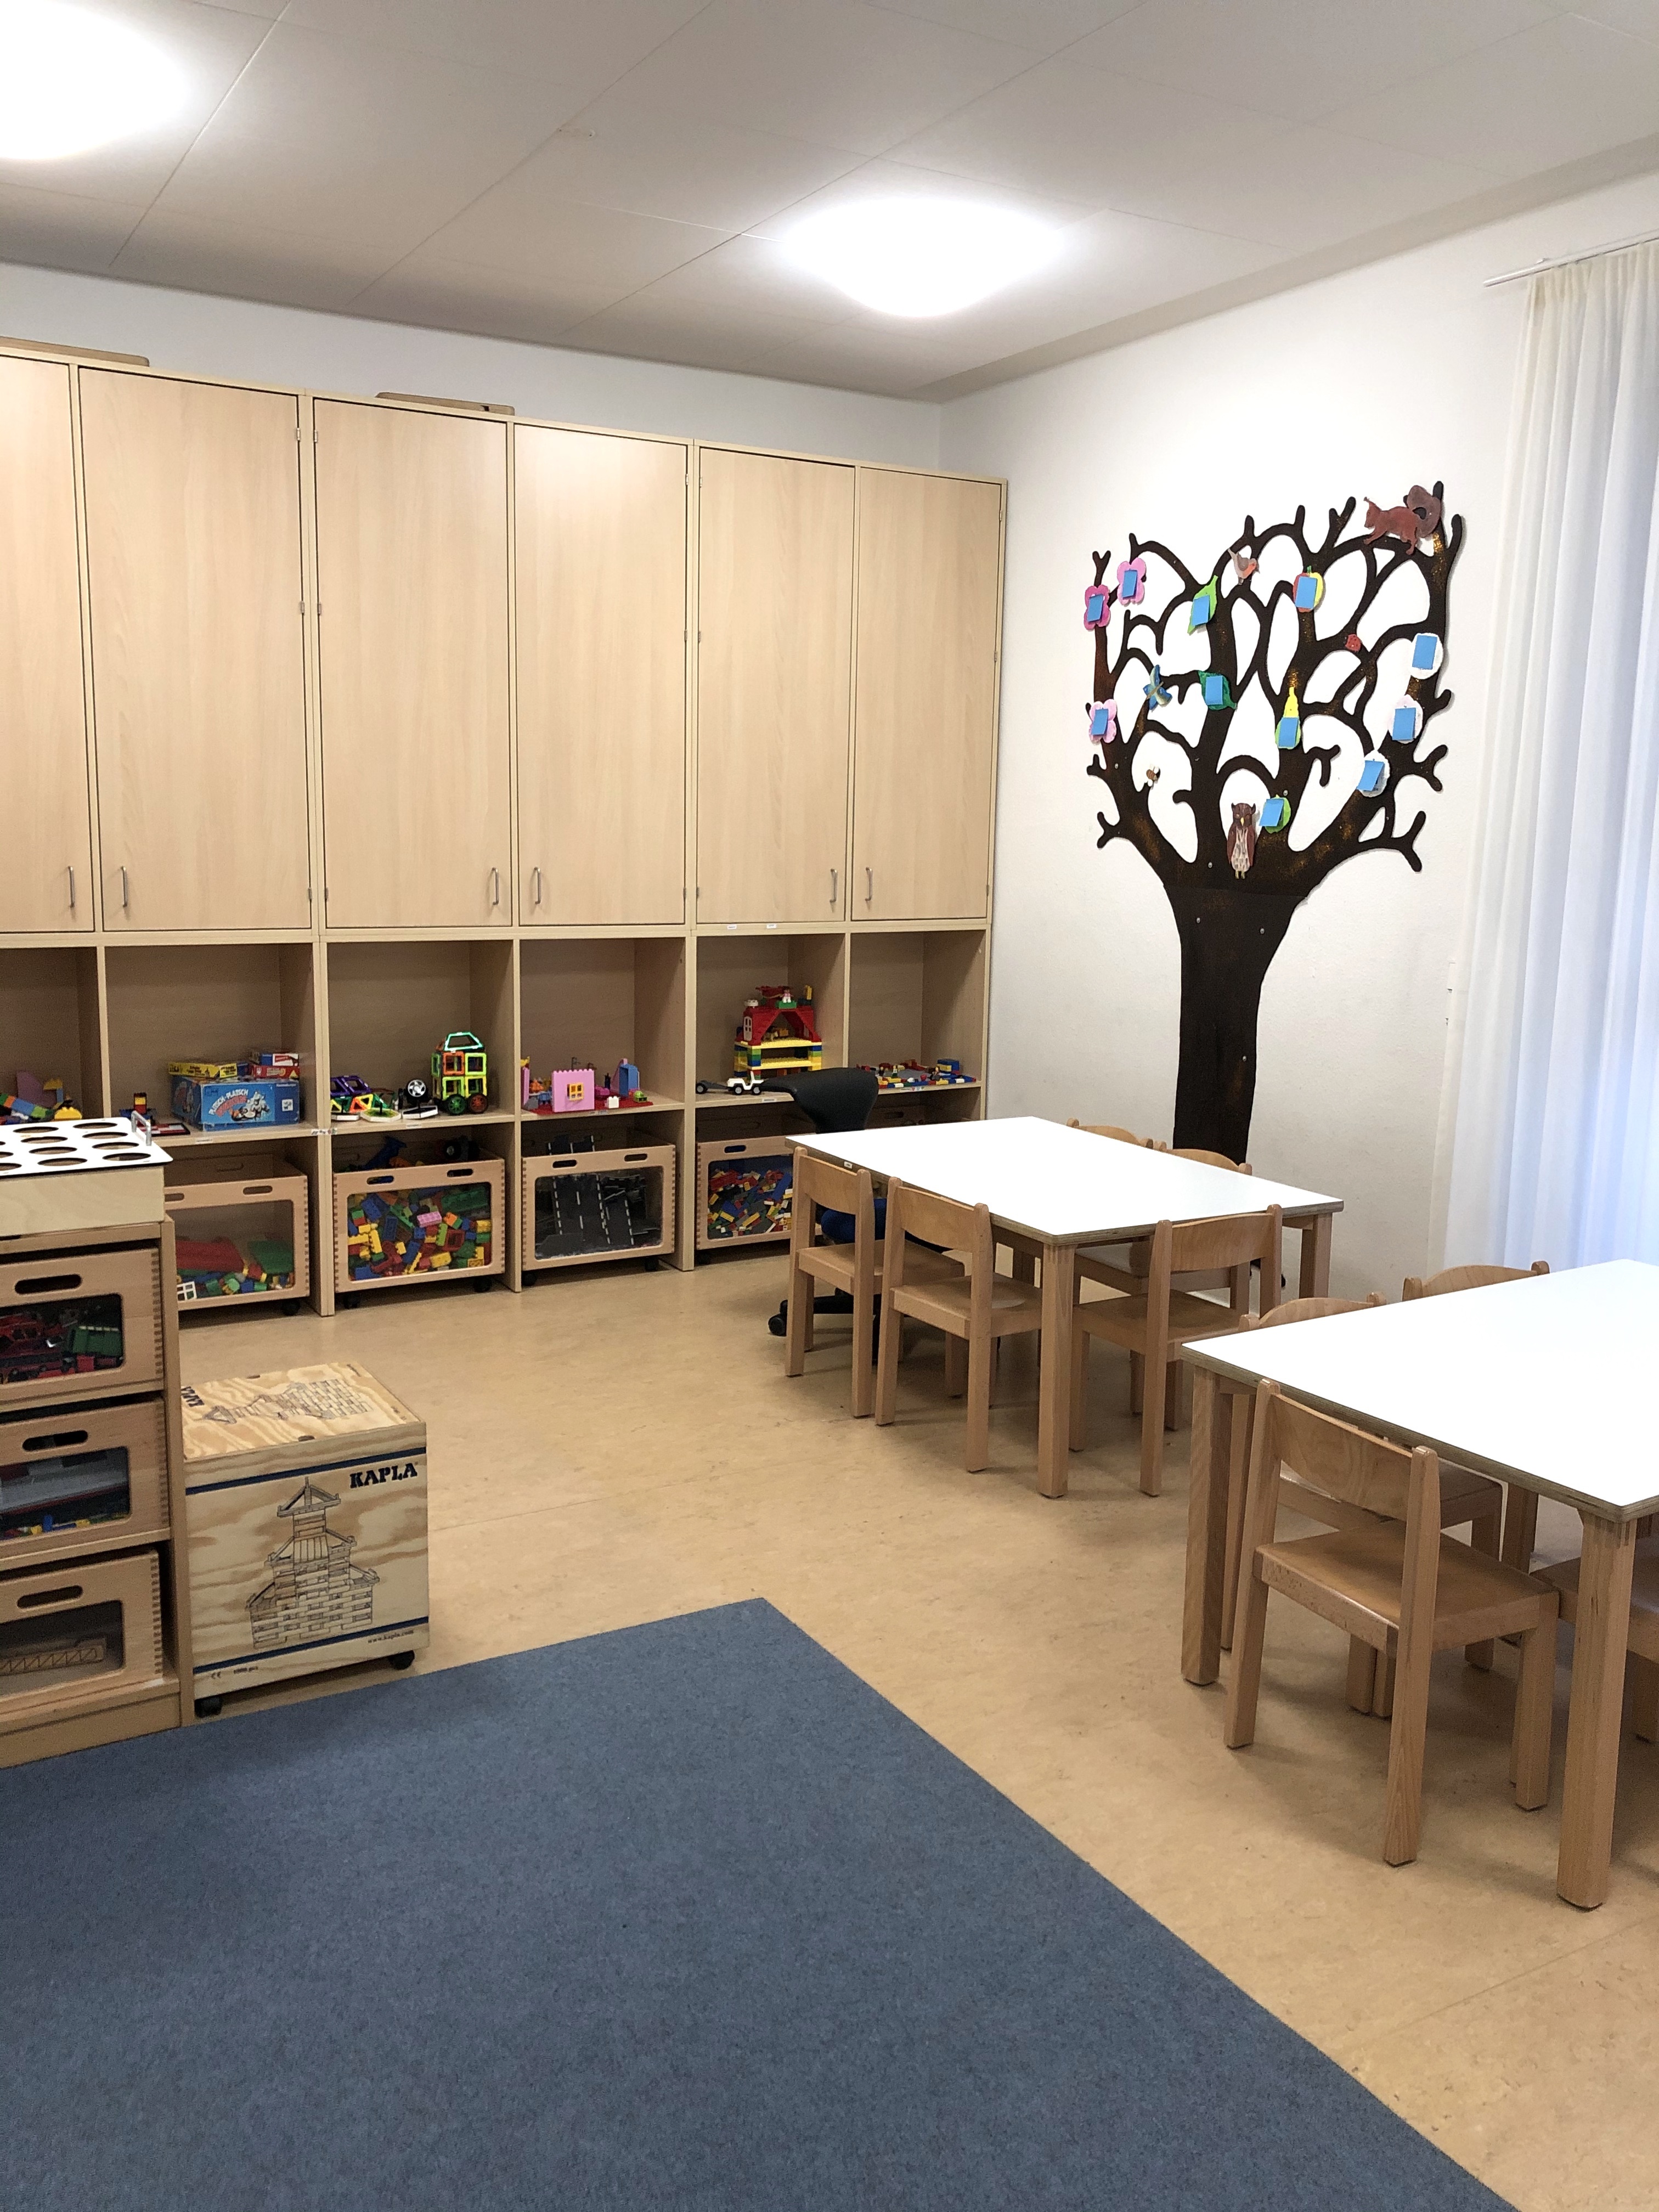 Das Bild zeigt das Bauzimmer im Kindergarten. An der Wand sind Schränke und Regale mit Spielsachen erkennbar. Es sind außerdem zwei Tische mit Stühlen zu sehen.